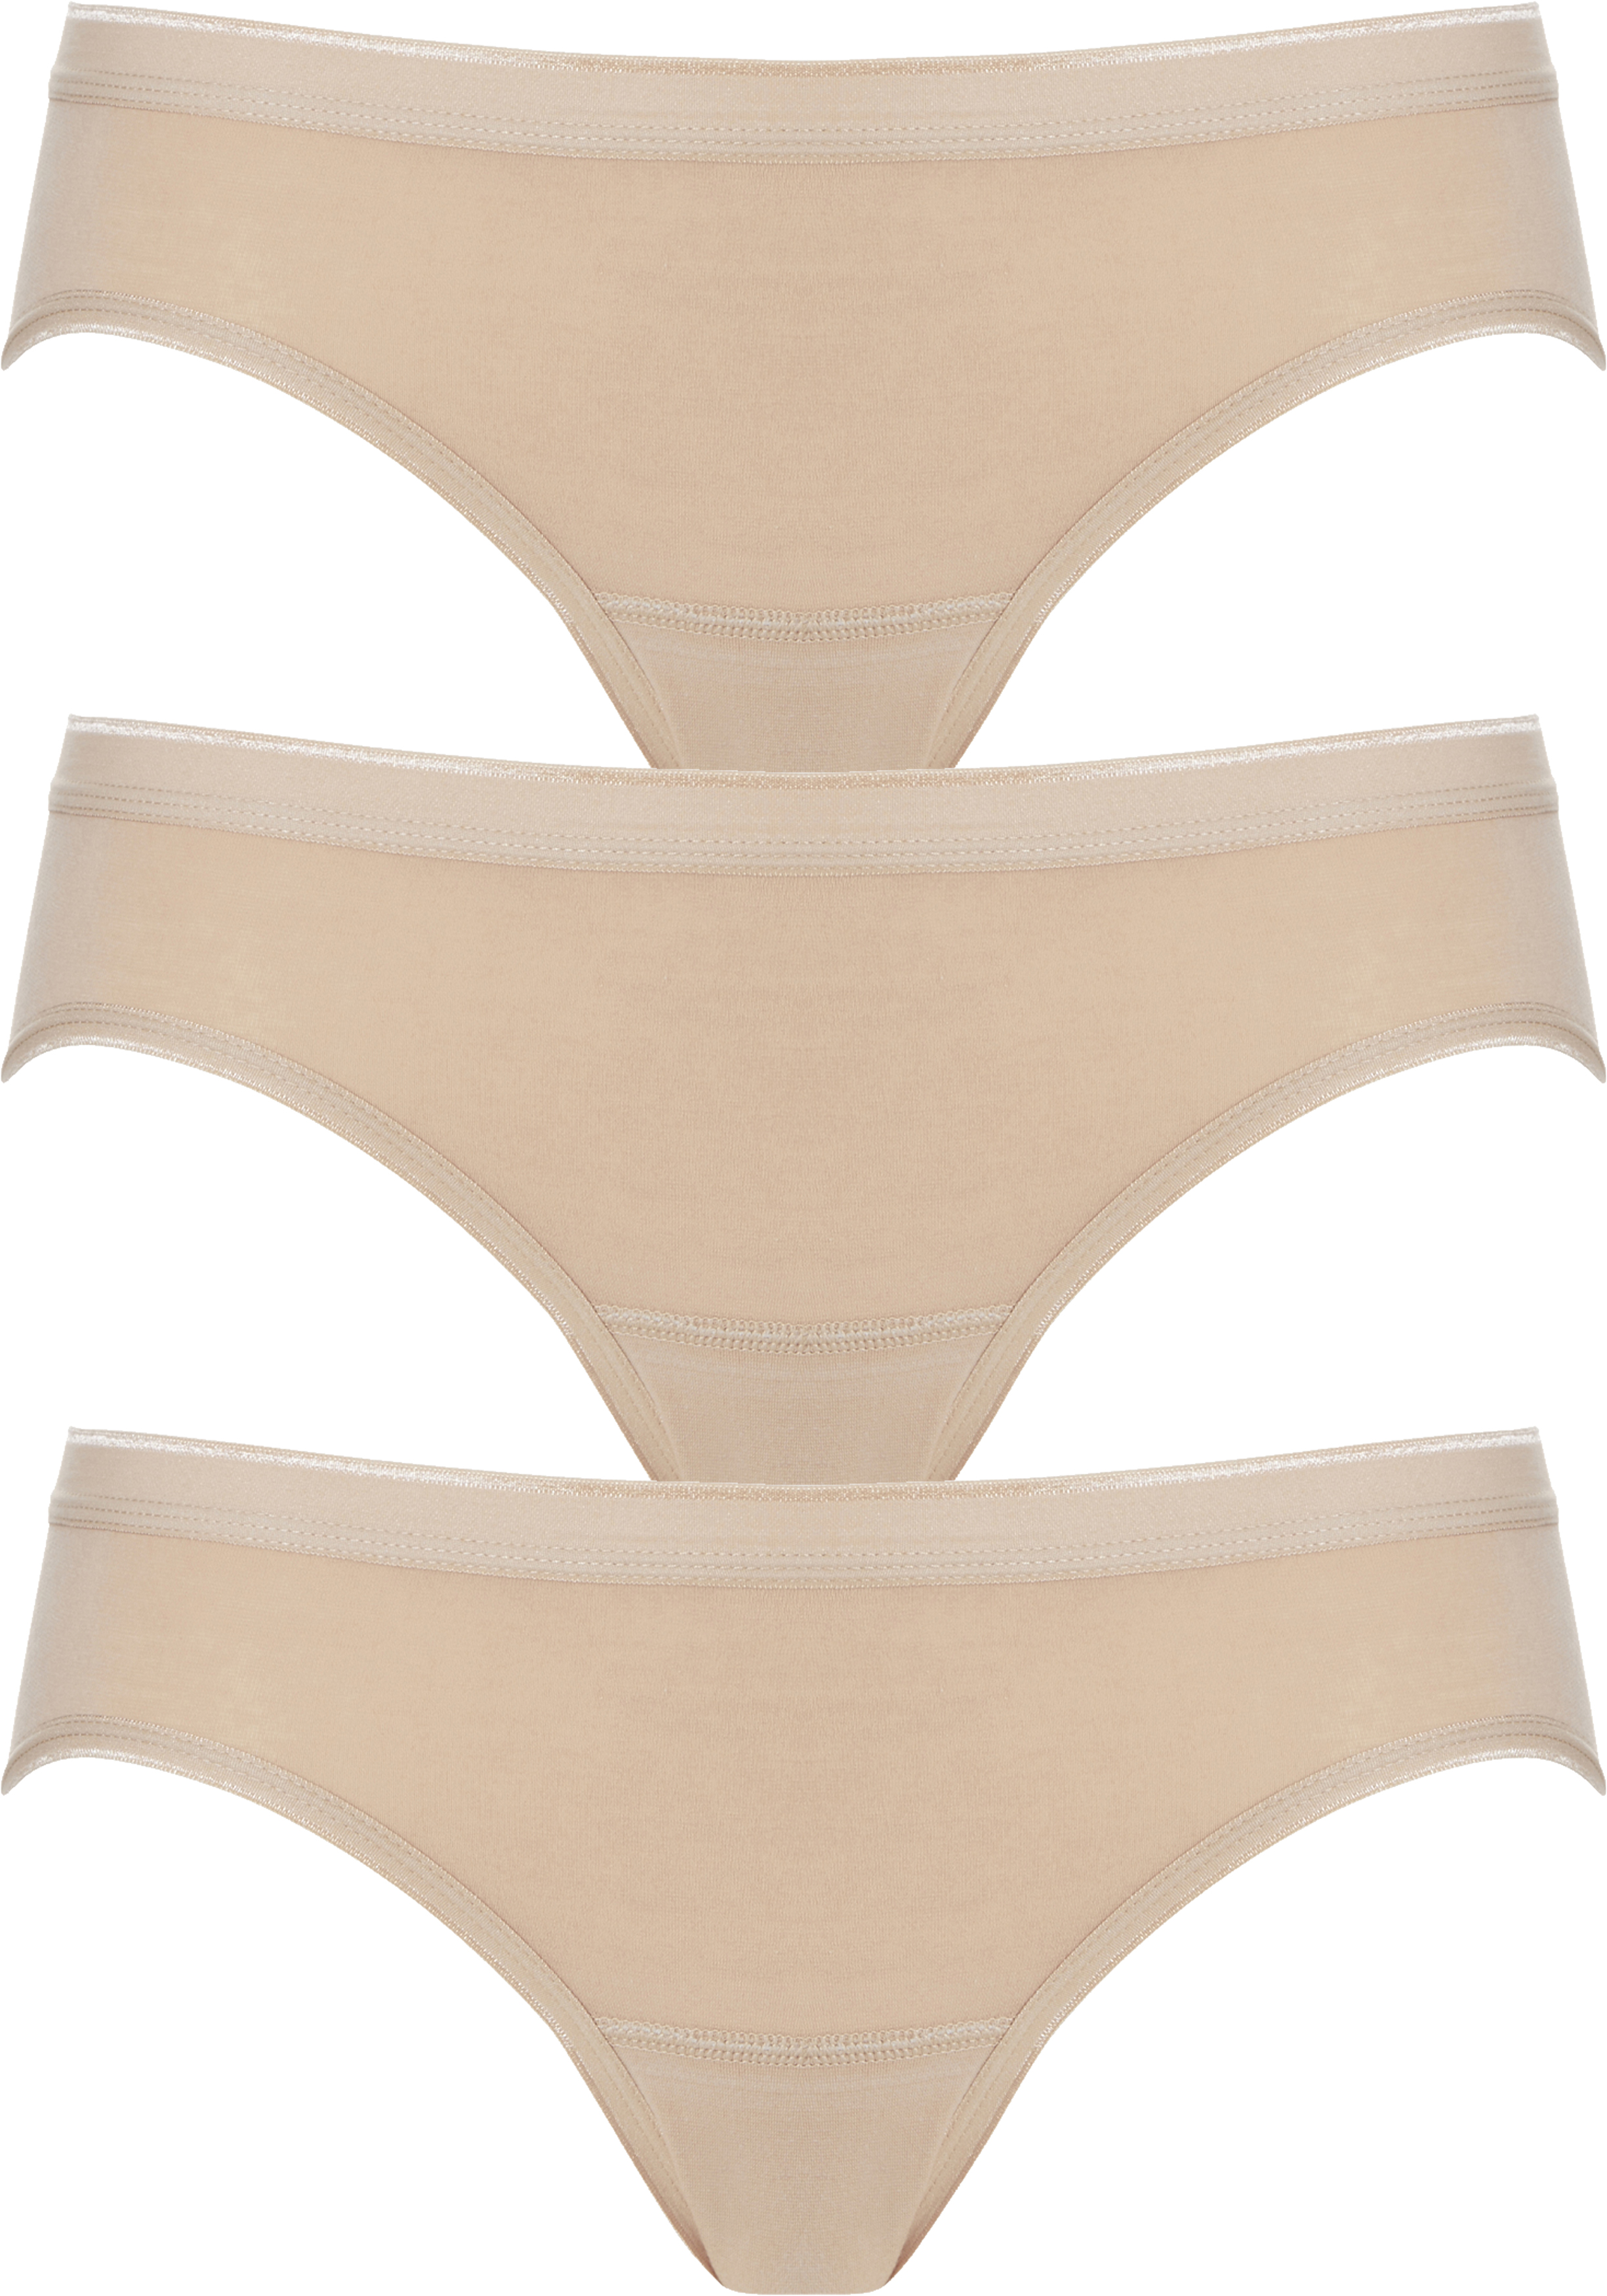 TEN CATE Basic women bikini slips (3-pack), dames slips lage taille, huidskleur